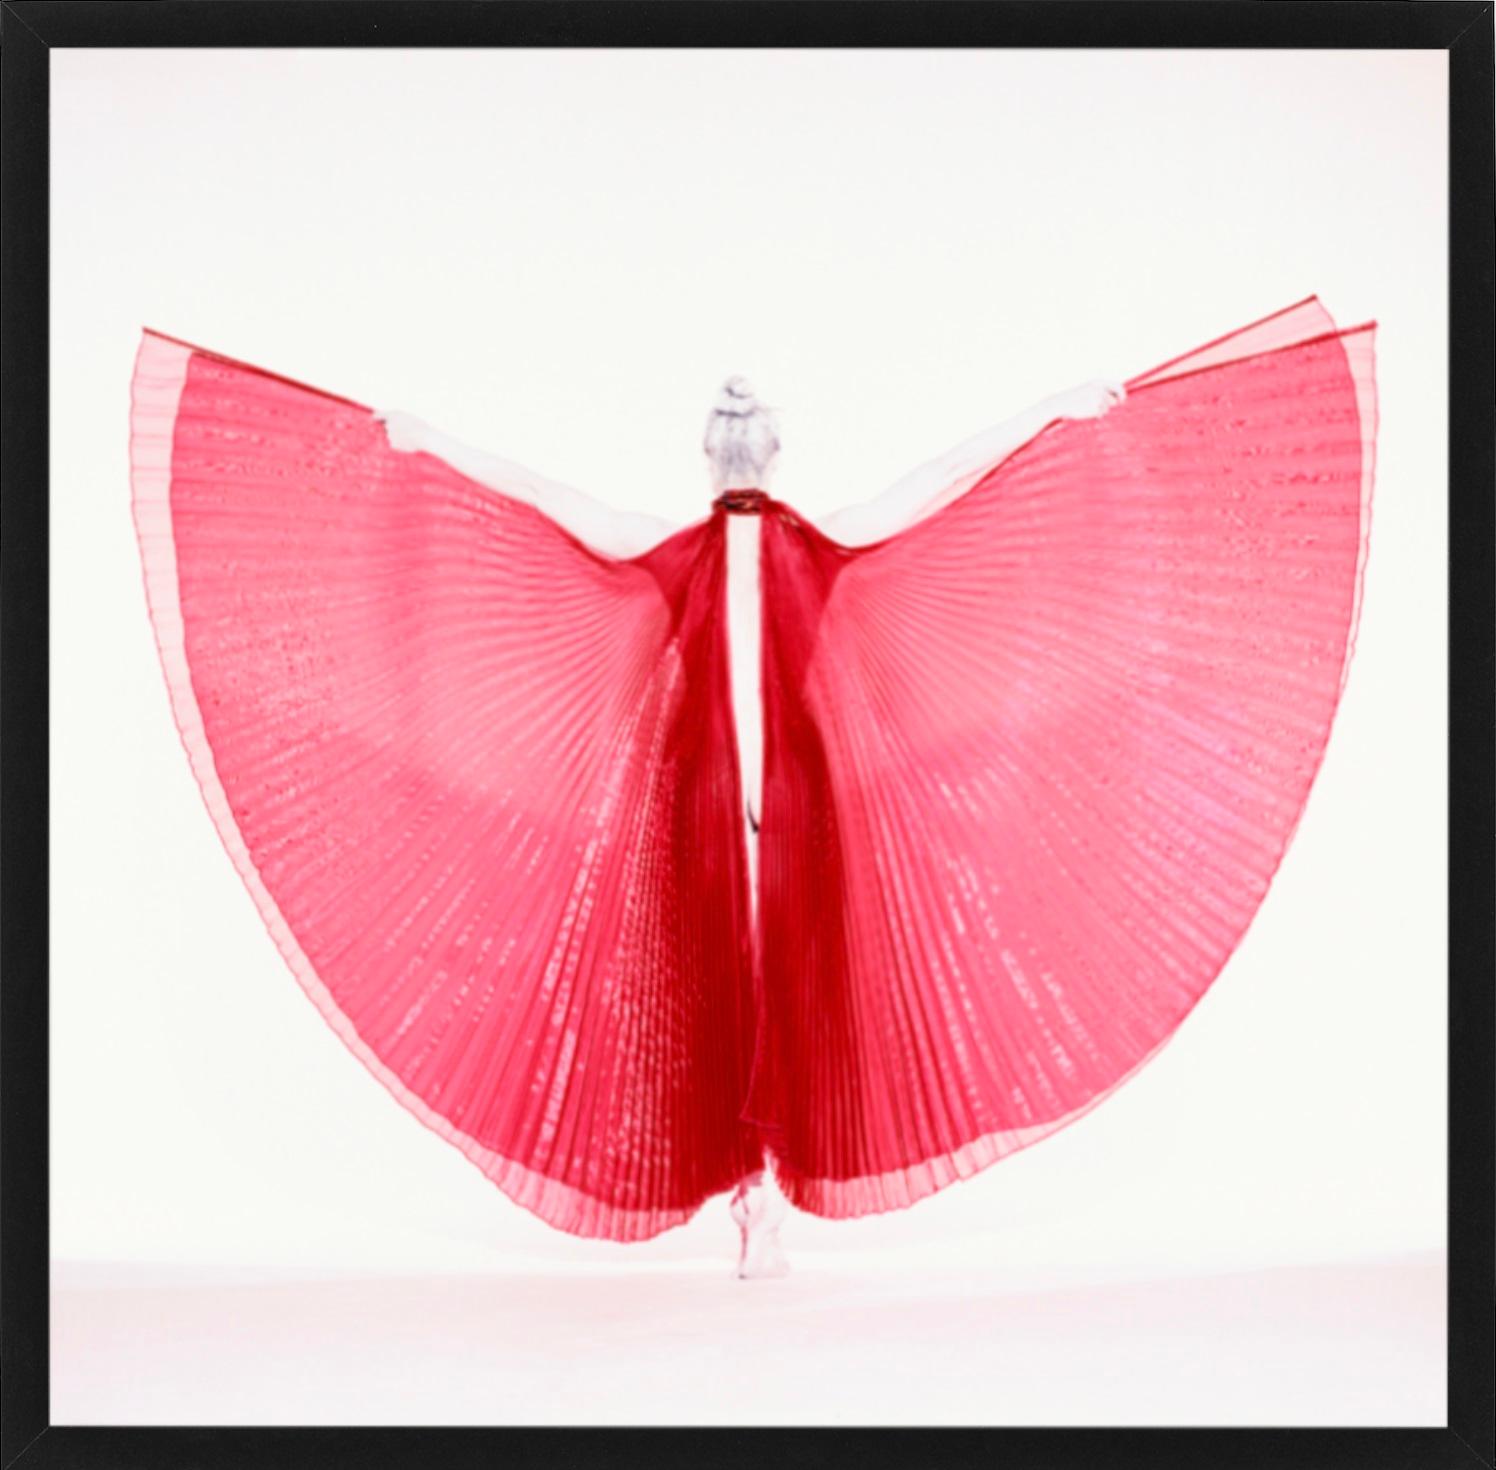 Giulia als Schmetterling – Aktfotografie eines weiblichen Modells mit rotem Hintergrund – Photograph von Guido Argentini